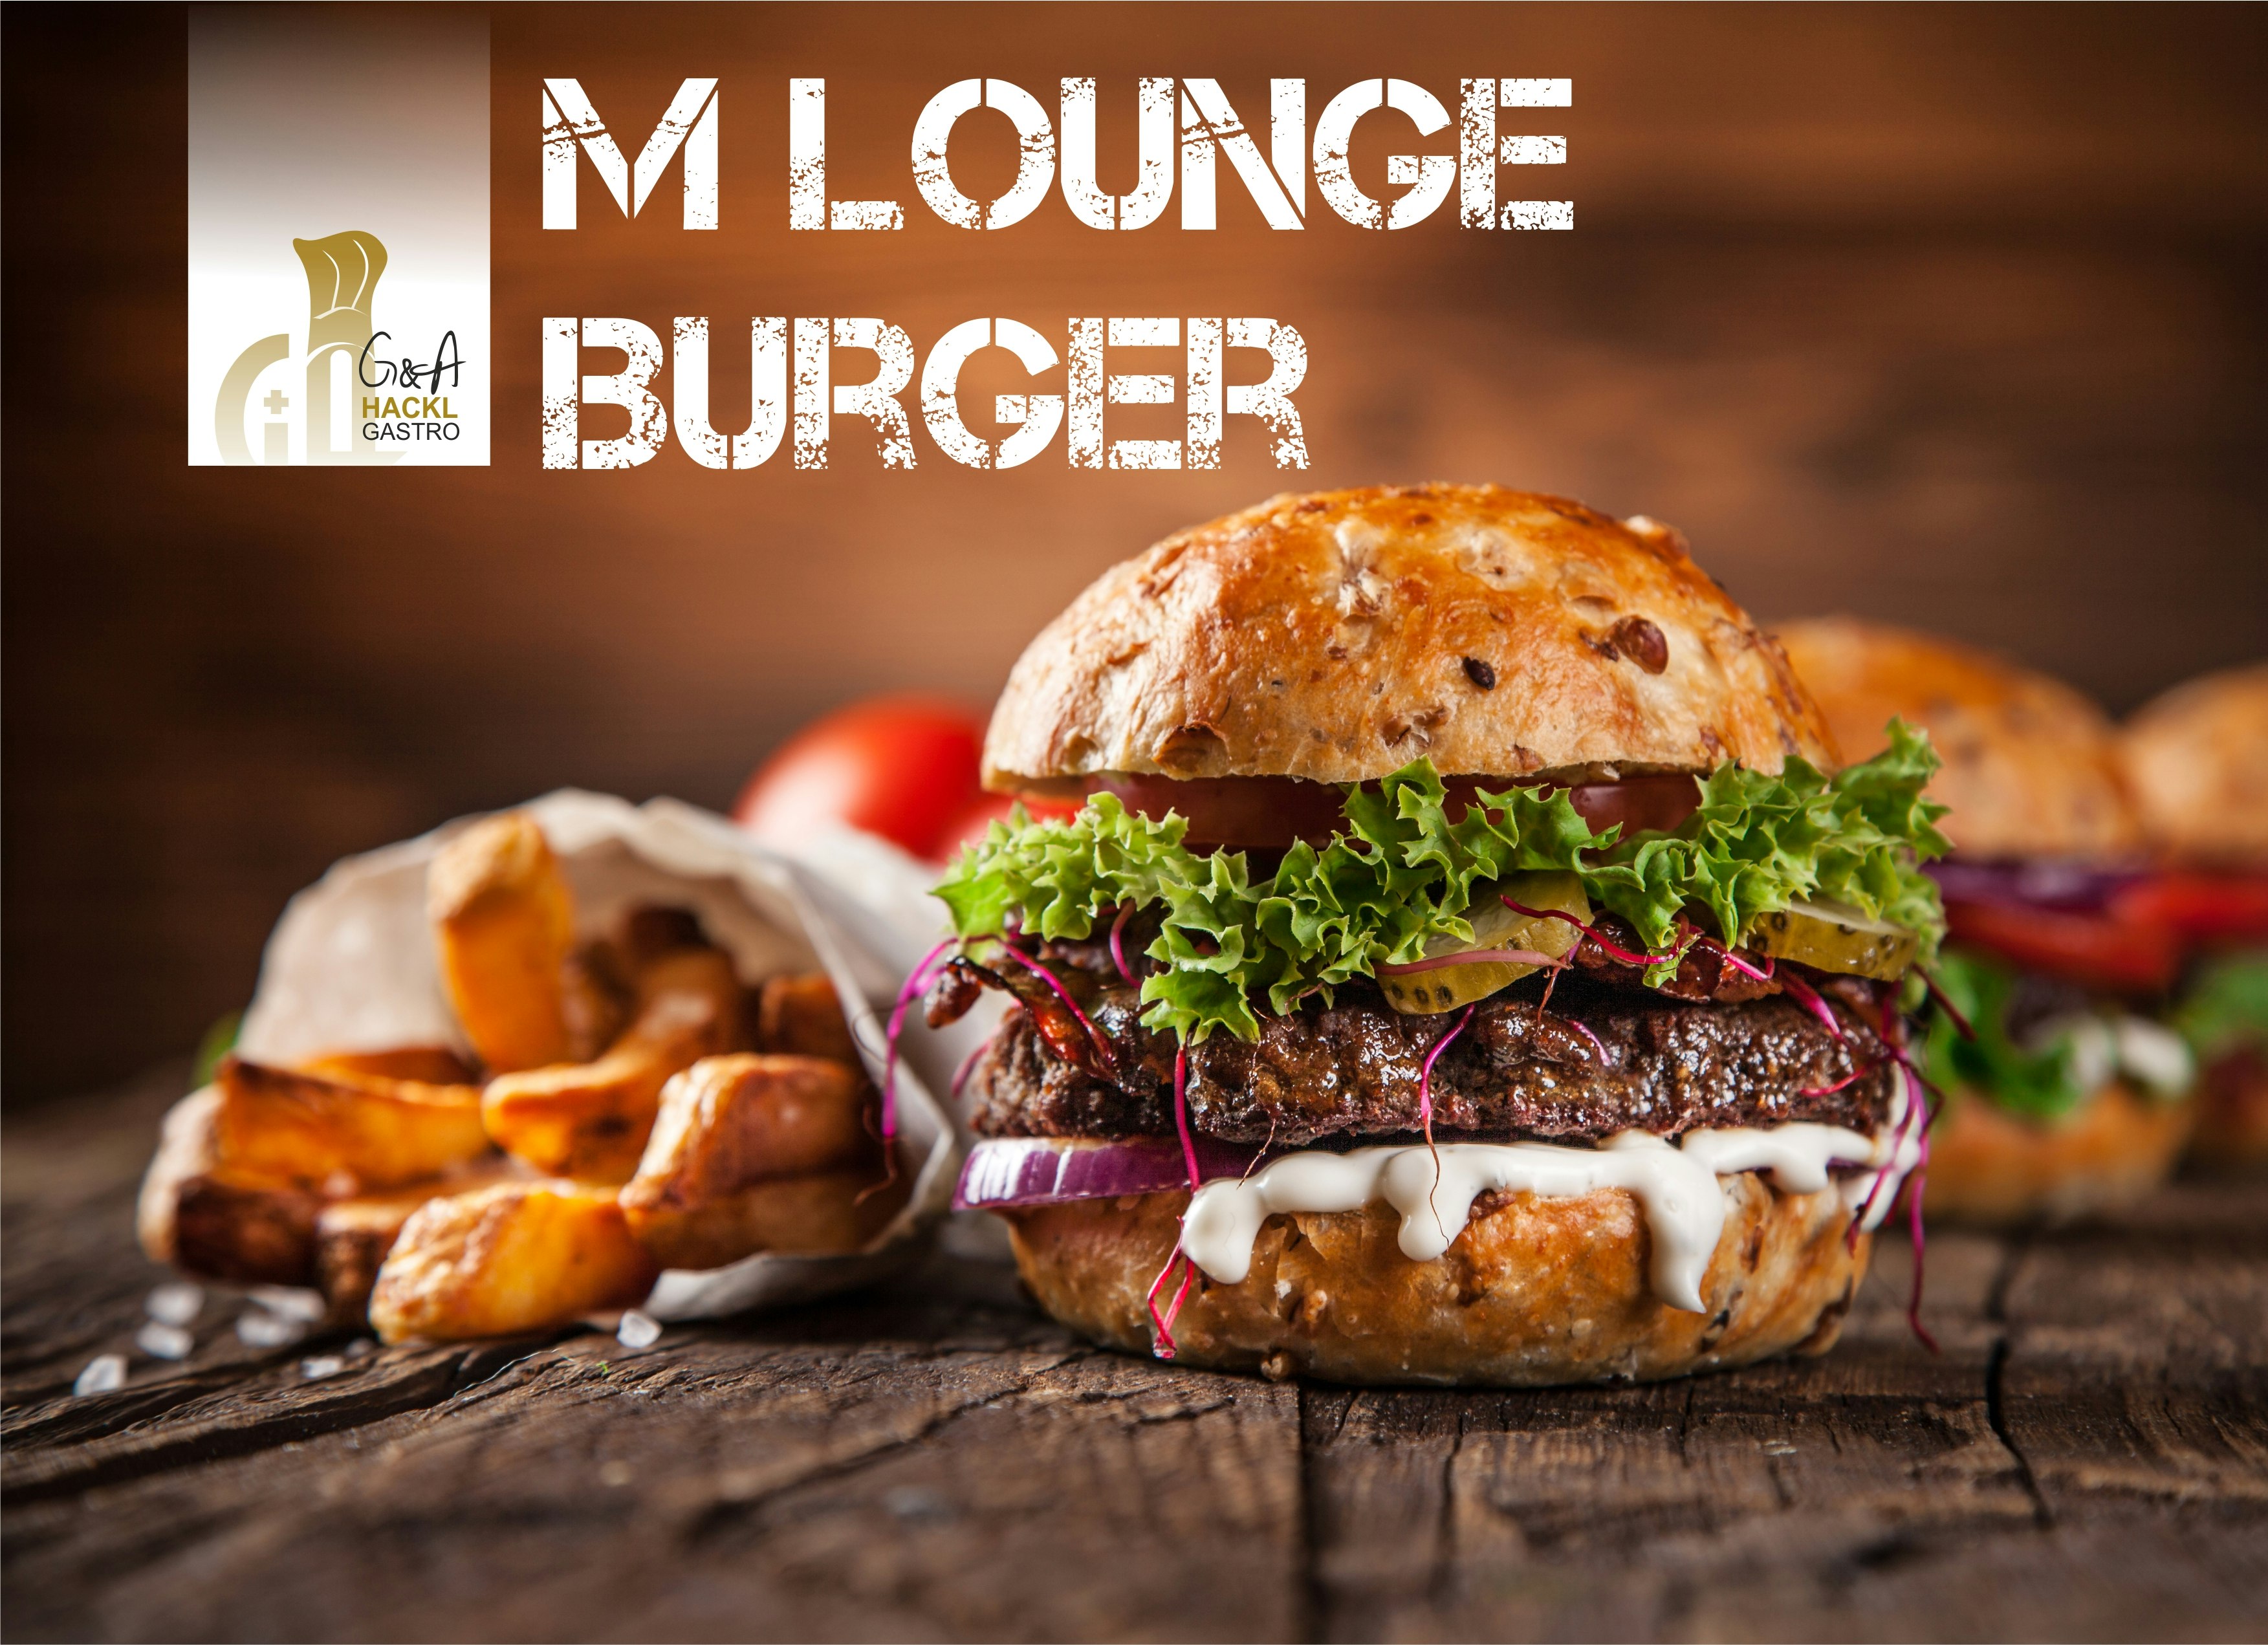 FREITAG AKTION - <br>
Burger 2 for 1 <br>
7,4 &euro; statt 14,8 &euro; pro Person